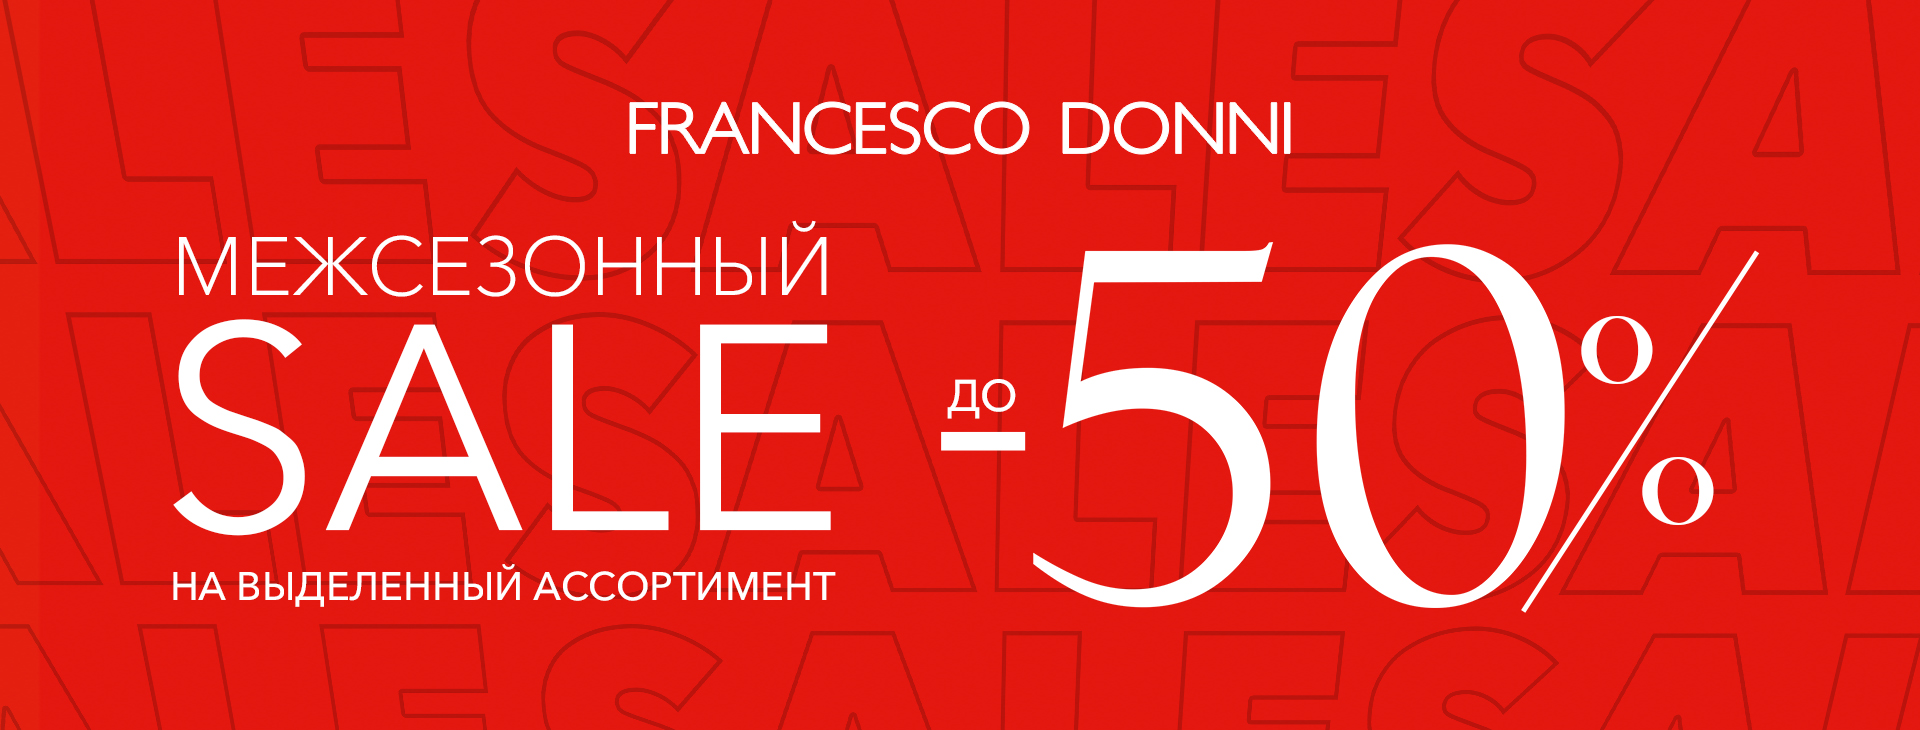 Во всех магазинах Francesco Donni стартовала «Межсезонная распродажа со скидками до 50%»